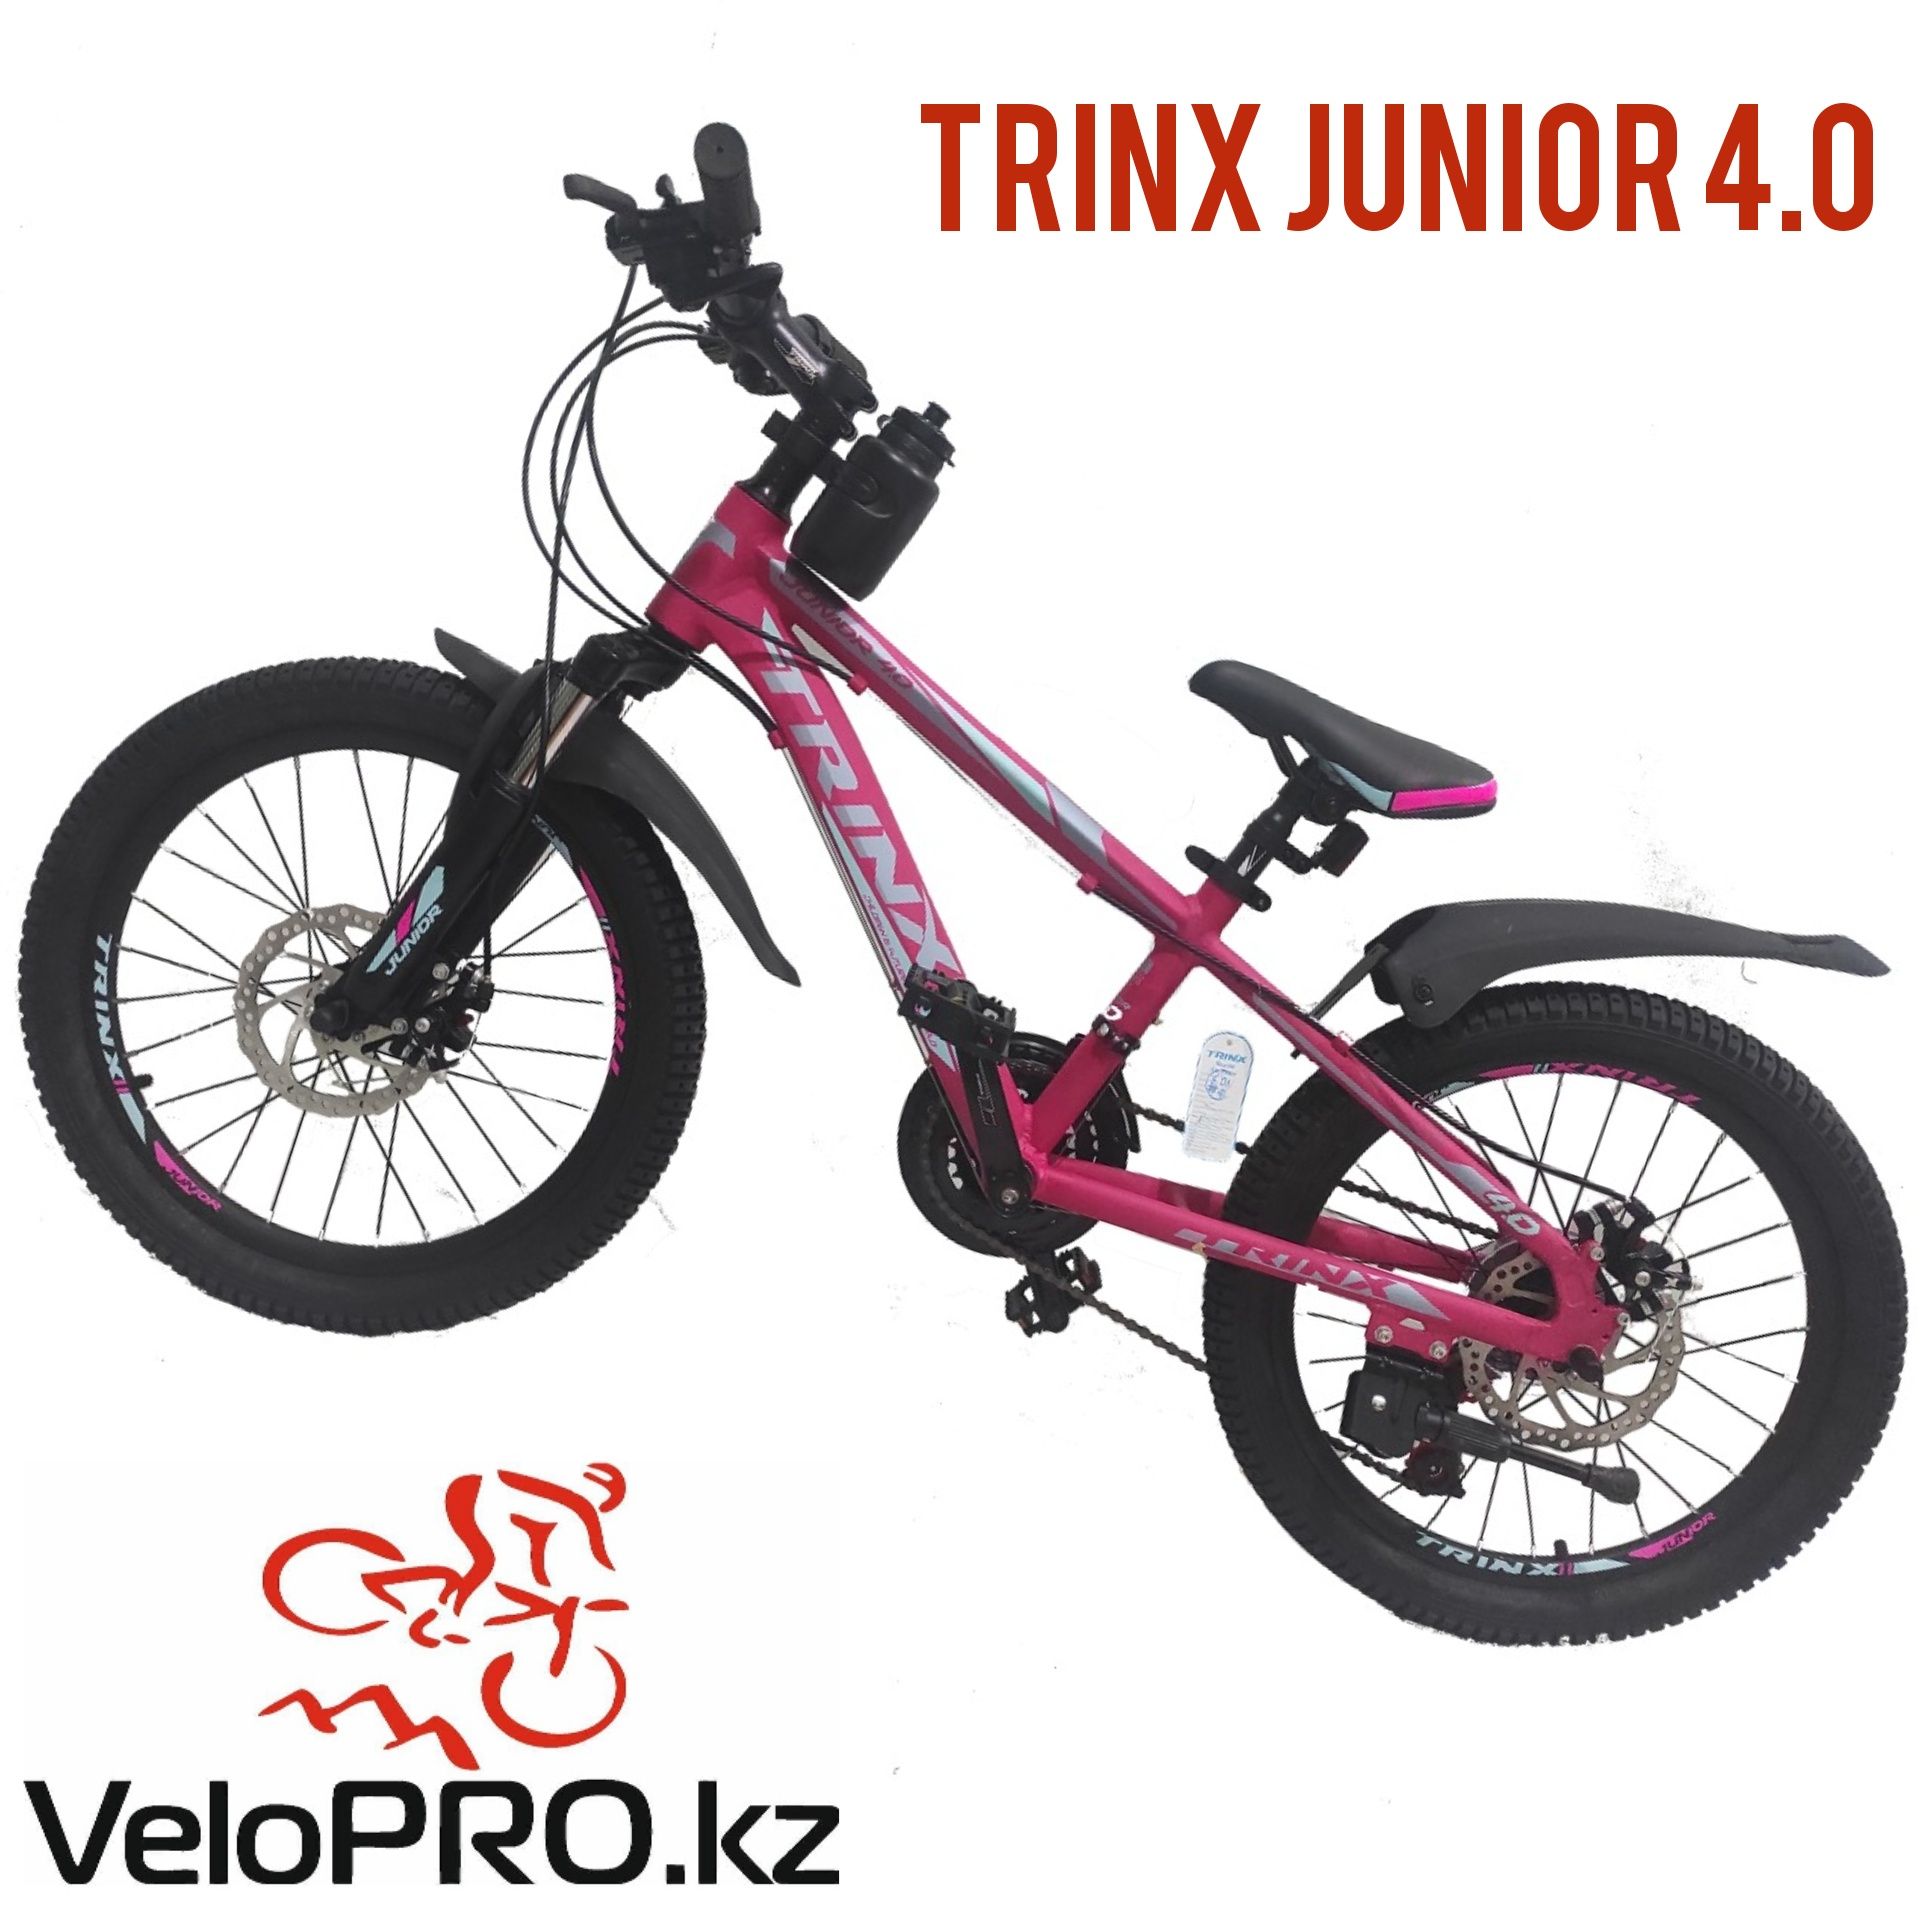 Детский велосипед Trinx junior. 11рама 20колеса. На 5-9 лет. Рассрочка